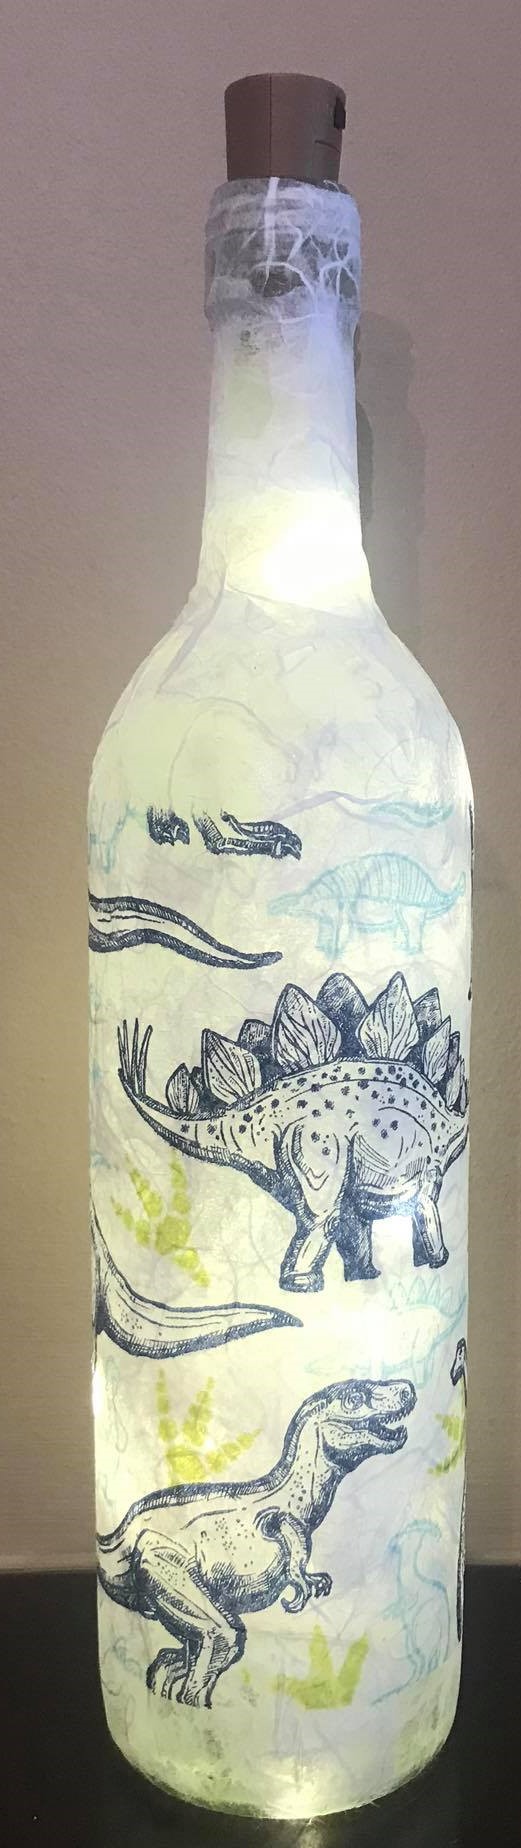 Dinosaur Light Up Bottle